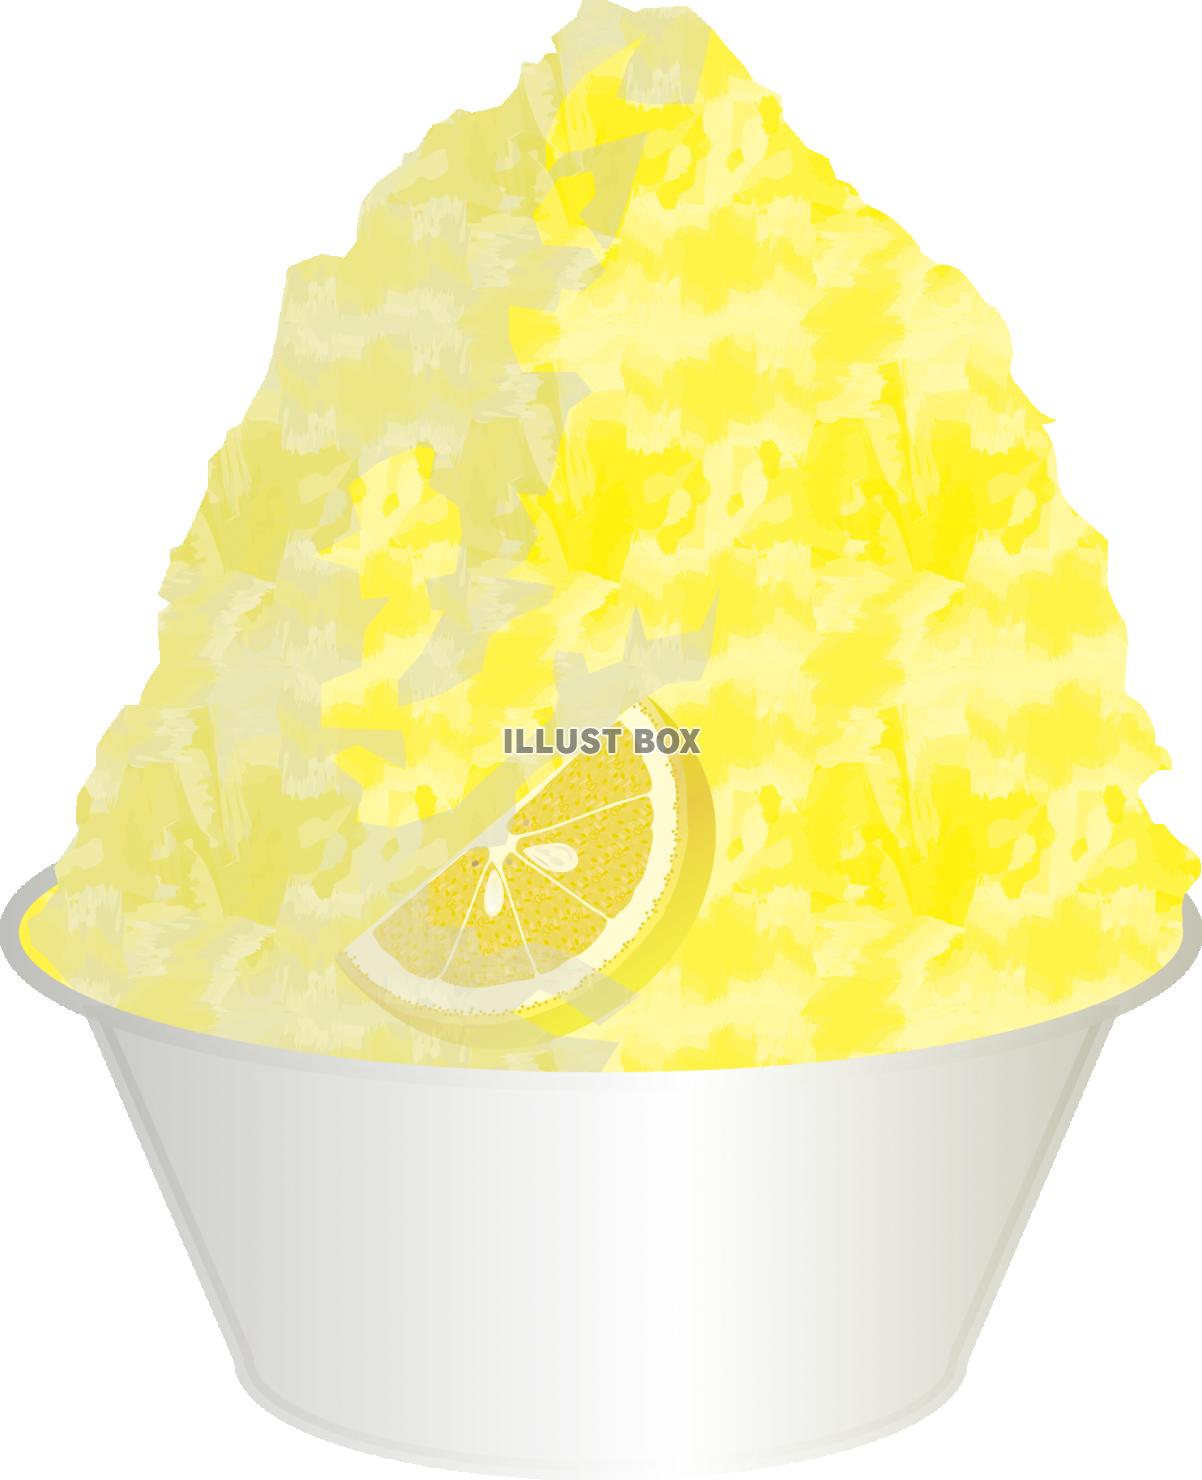 かき氷レモン